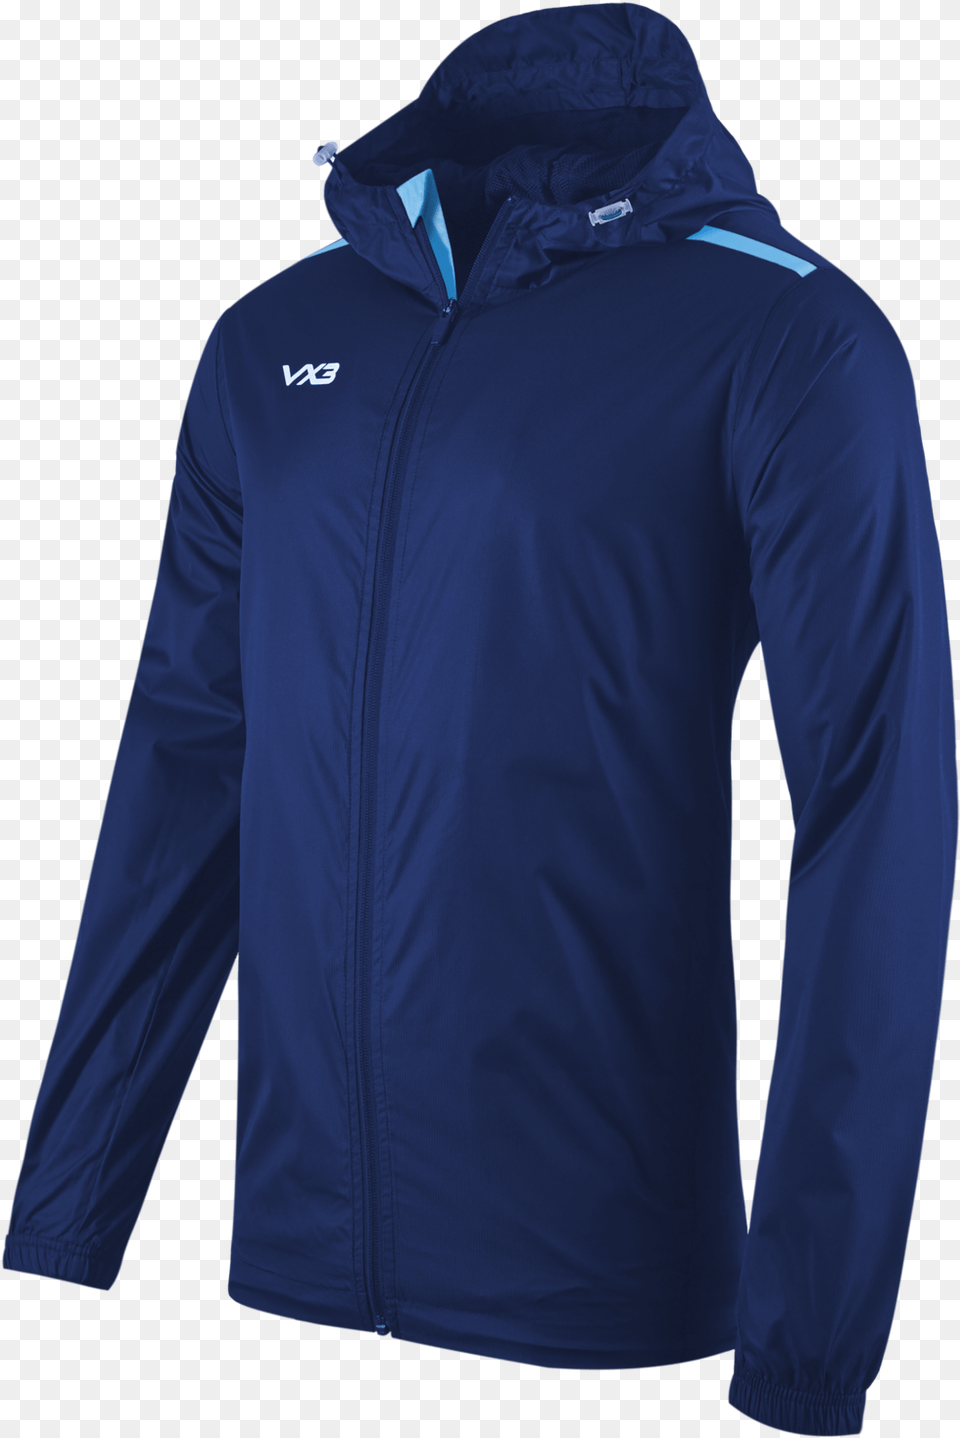 Jacket Vx3 Sportswear, Clothing, Coat, Long Sleeve, Sleeve Png Image